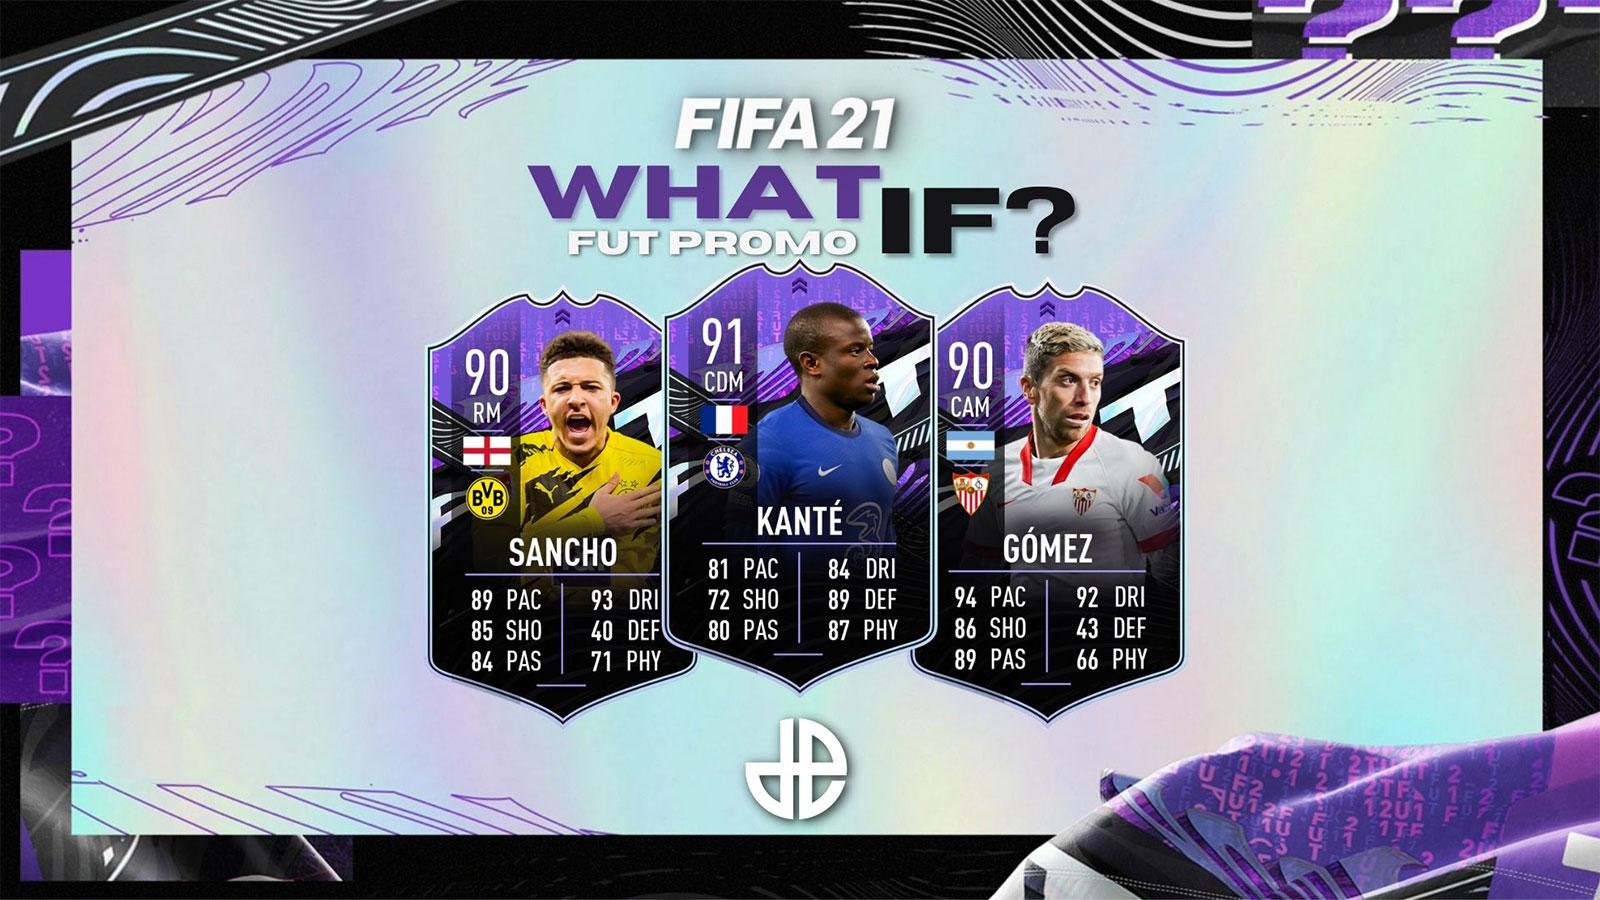 FIFA 21 “What If” promo revealed: Kante, Sancho, Gomez - Dexerto